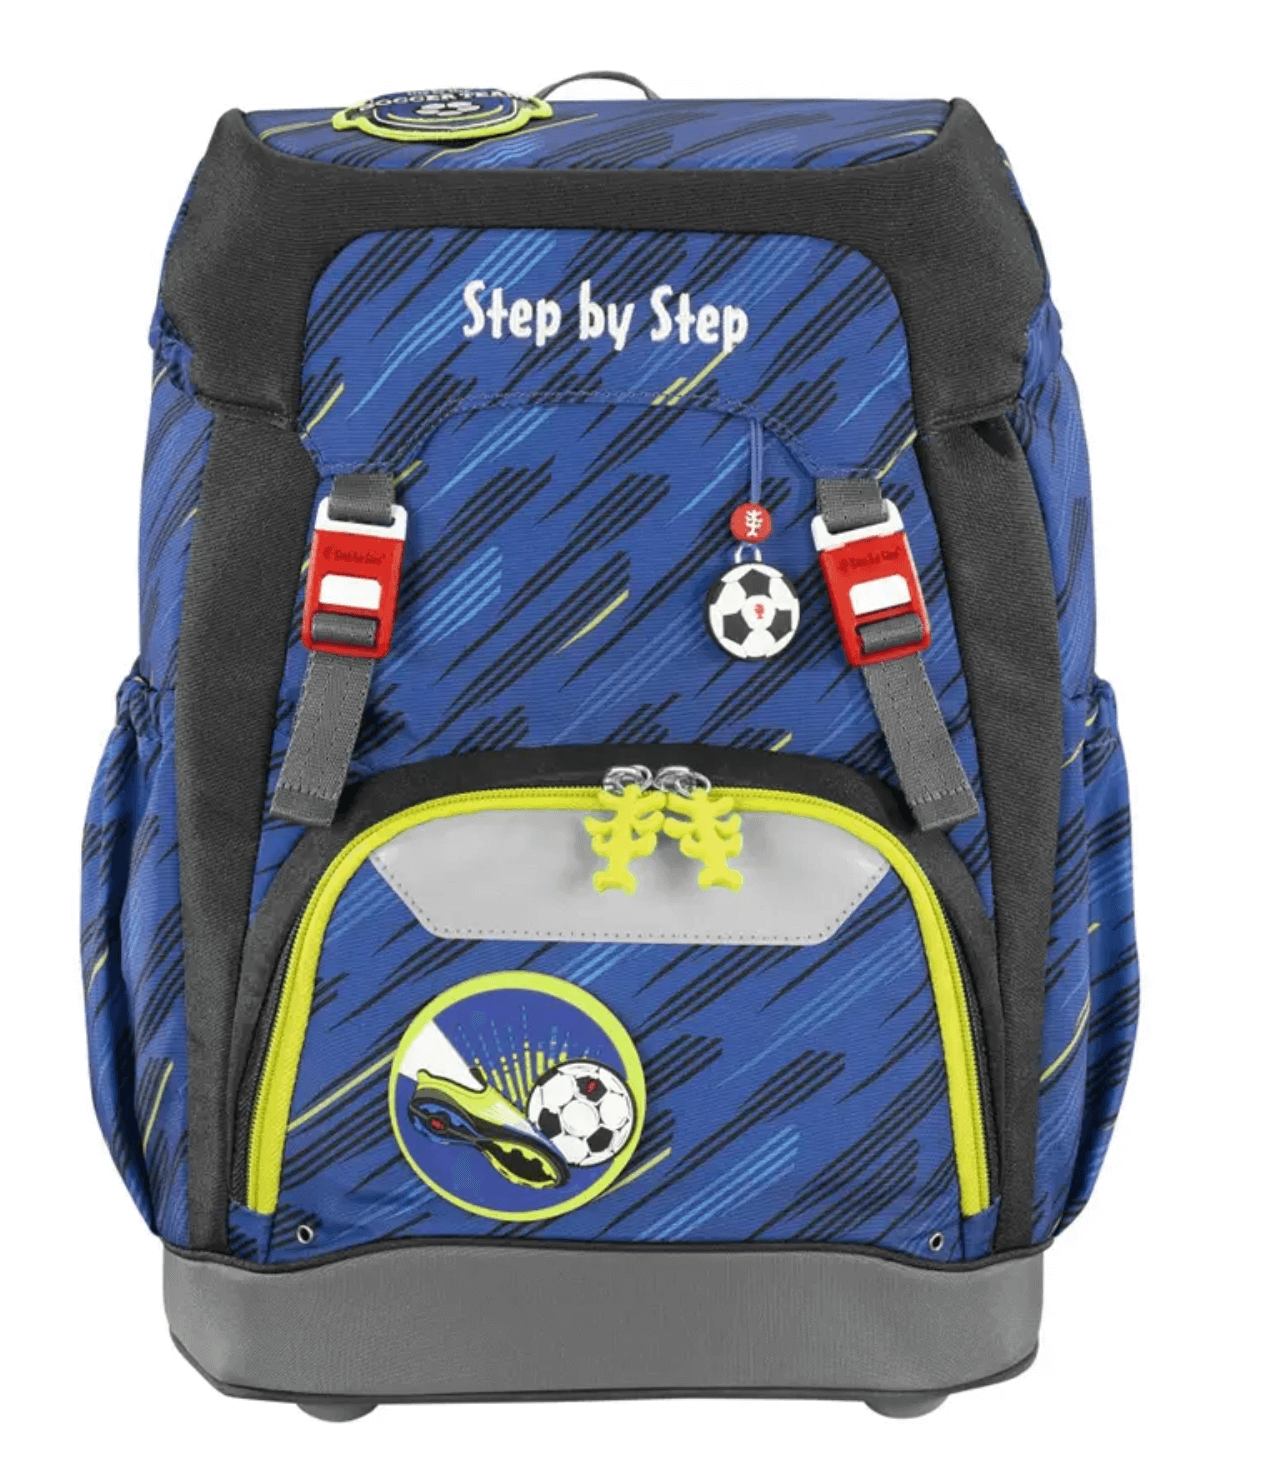 Školní batoh Step by Step GRADE Fotbal, AGR certifikát